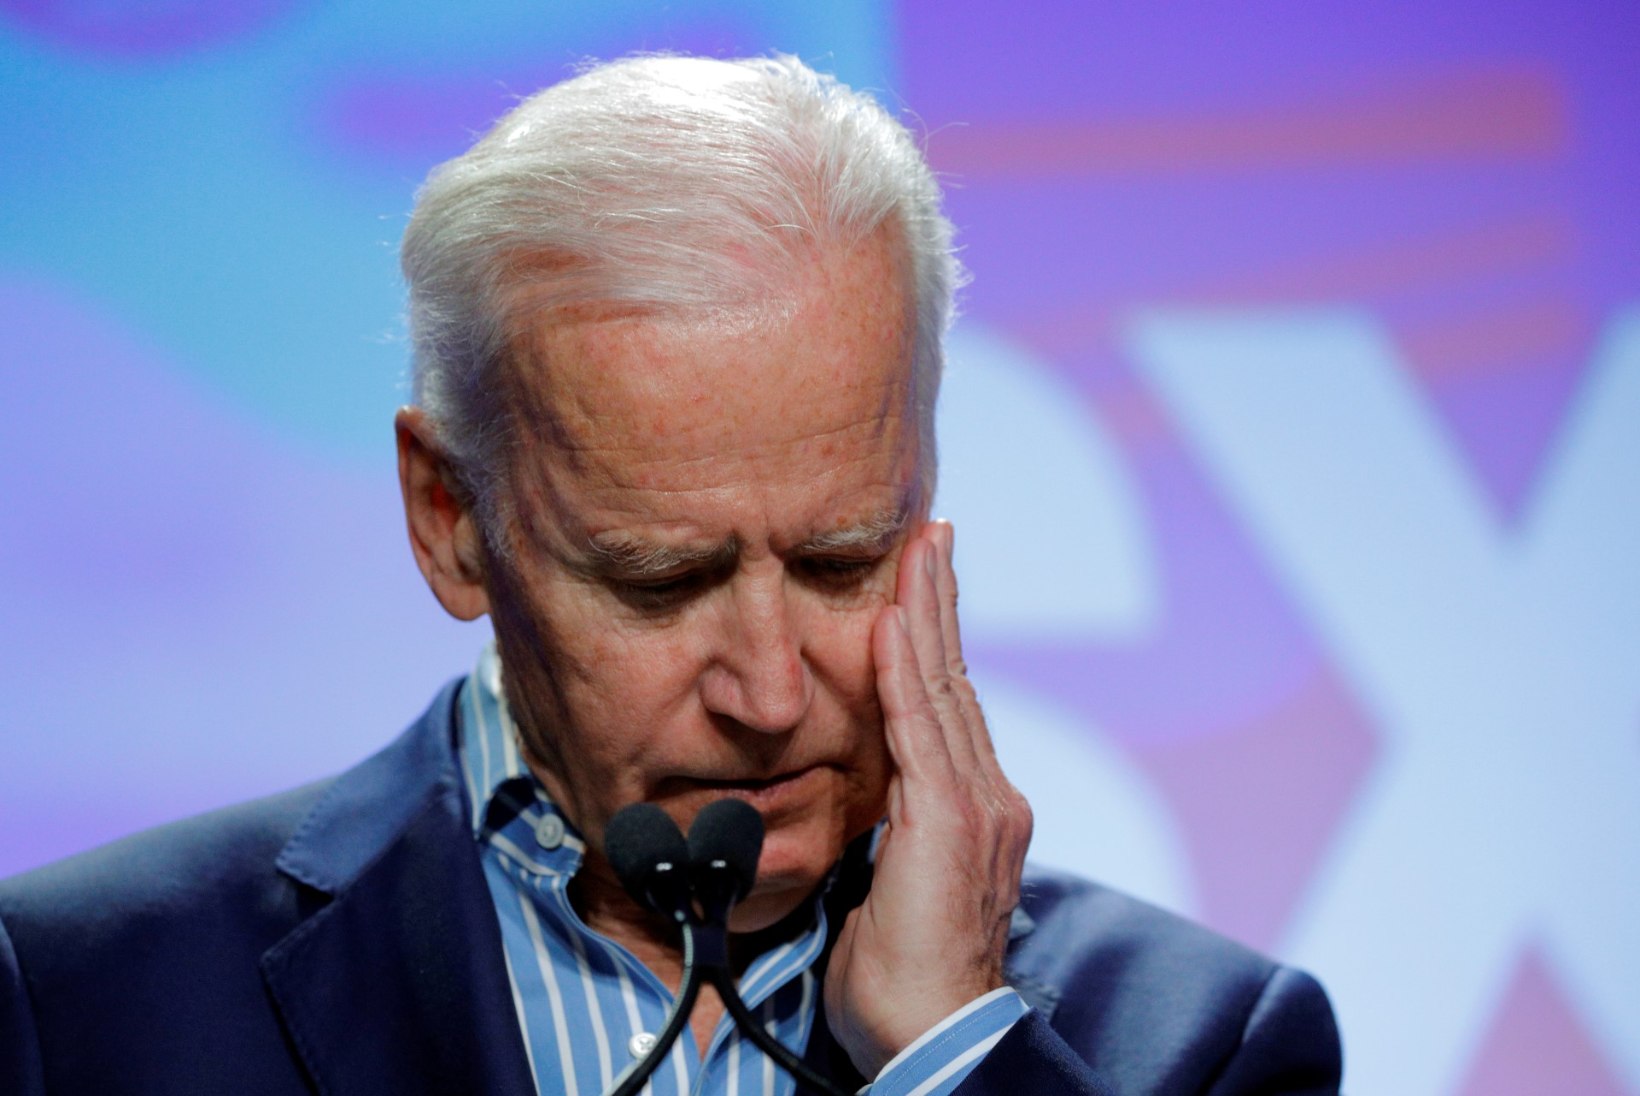 VIDEO | Vähist kõnelemine muutis Joe Bideni emotsionaalseks